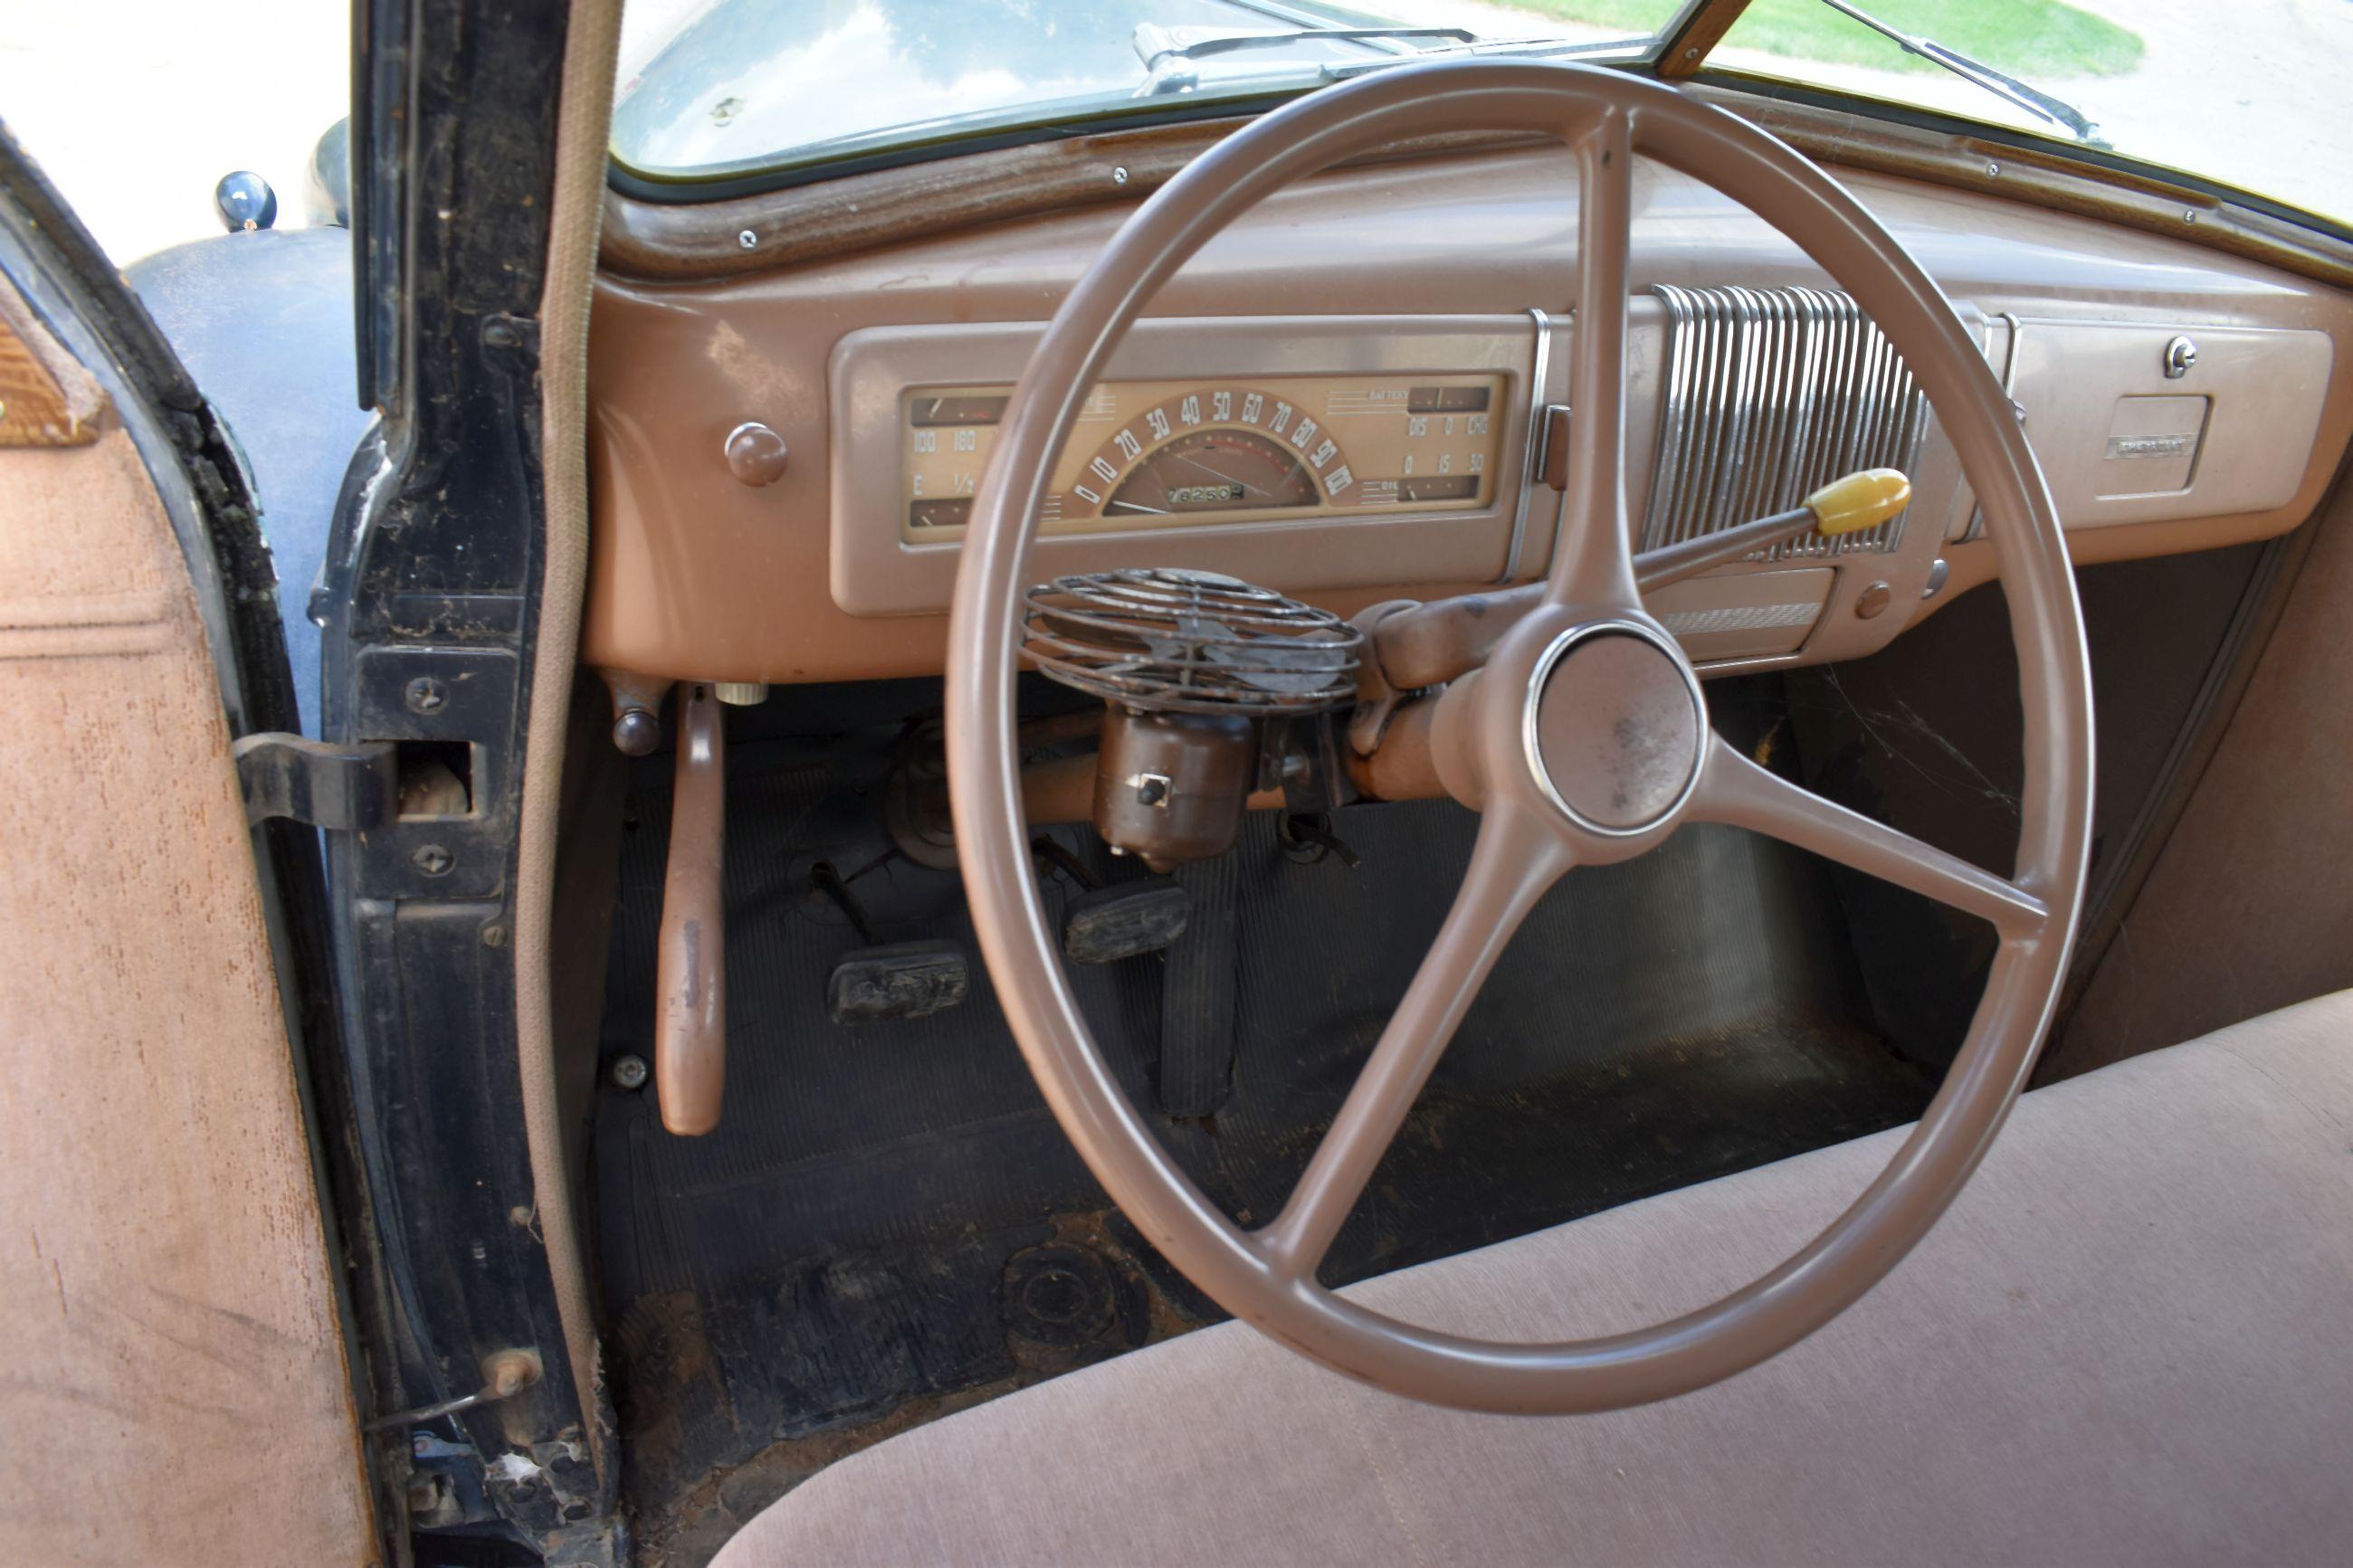 1940 Chevrolet Master 85, 2 Door Sedan, All Original, Very Nice, Easy Restoration Or Hot Rod, 78,250